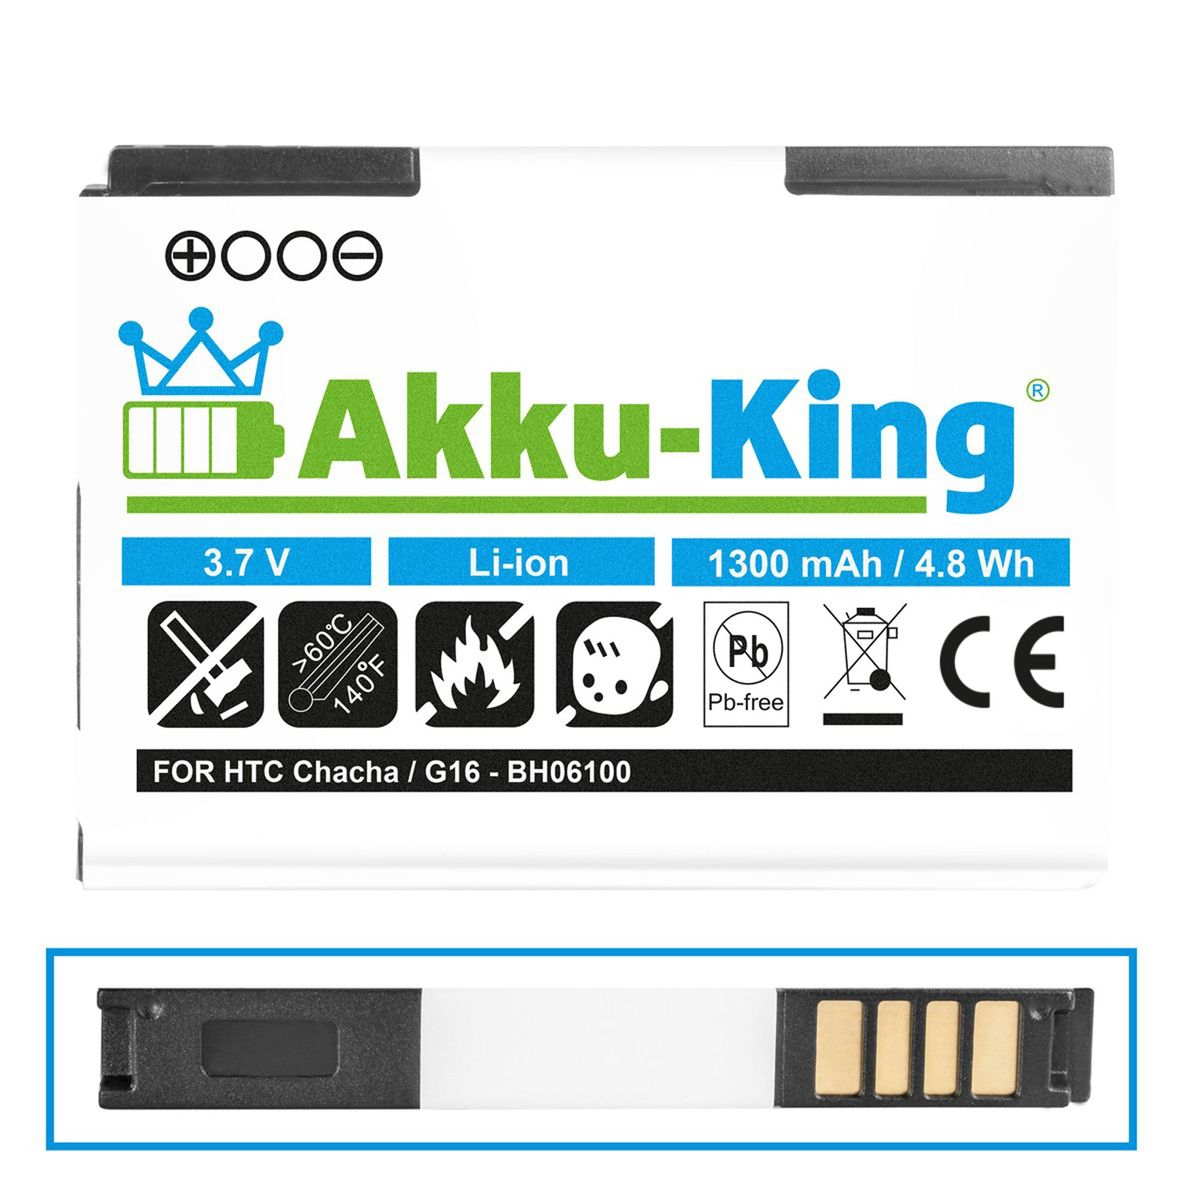 Volt, 1300mAh Akku AKKU-KING Li-Ion Handy-Akku, HTC BA-S570 mit 3.7 kompatibel